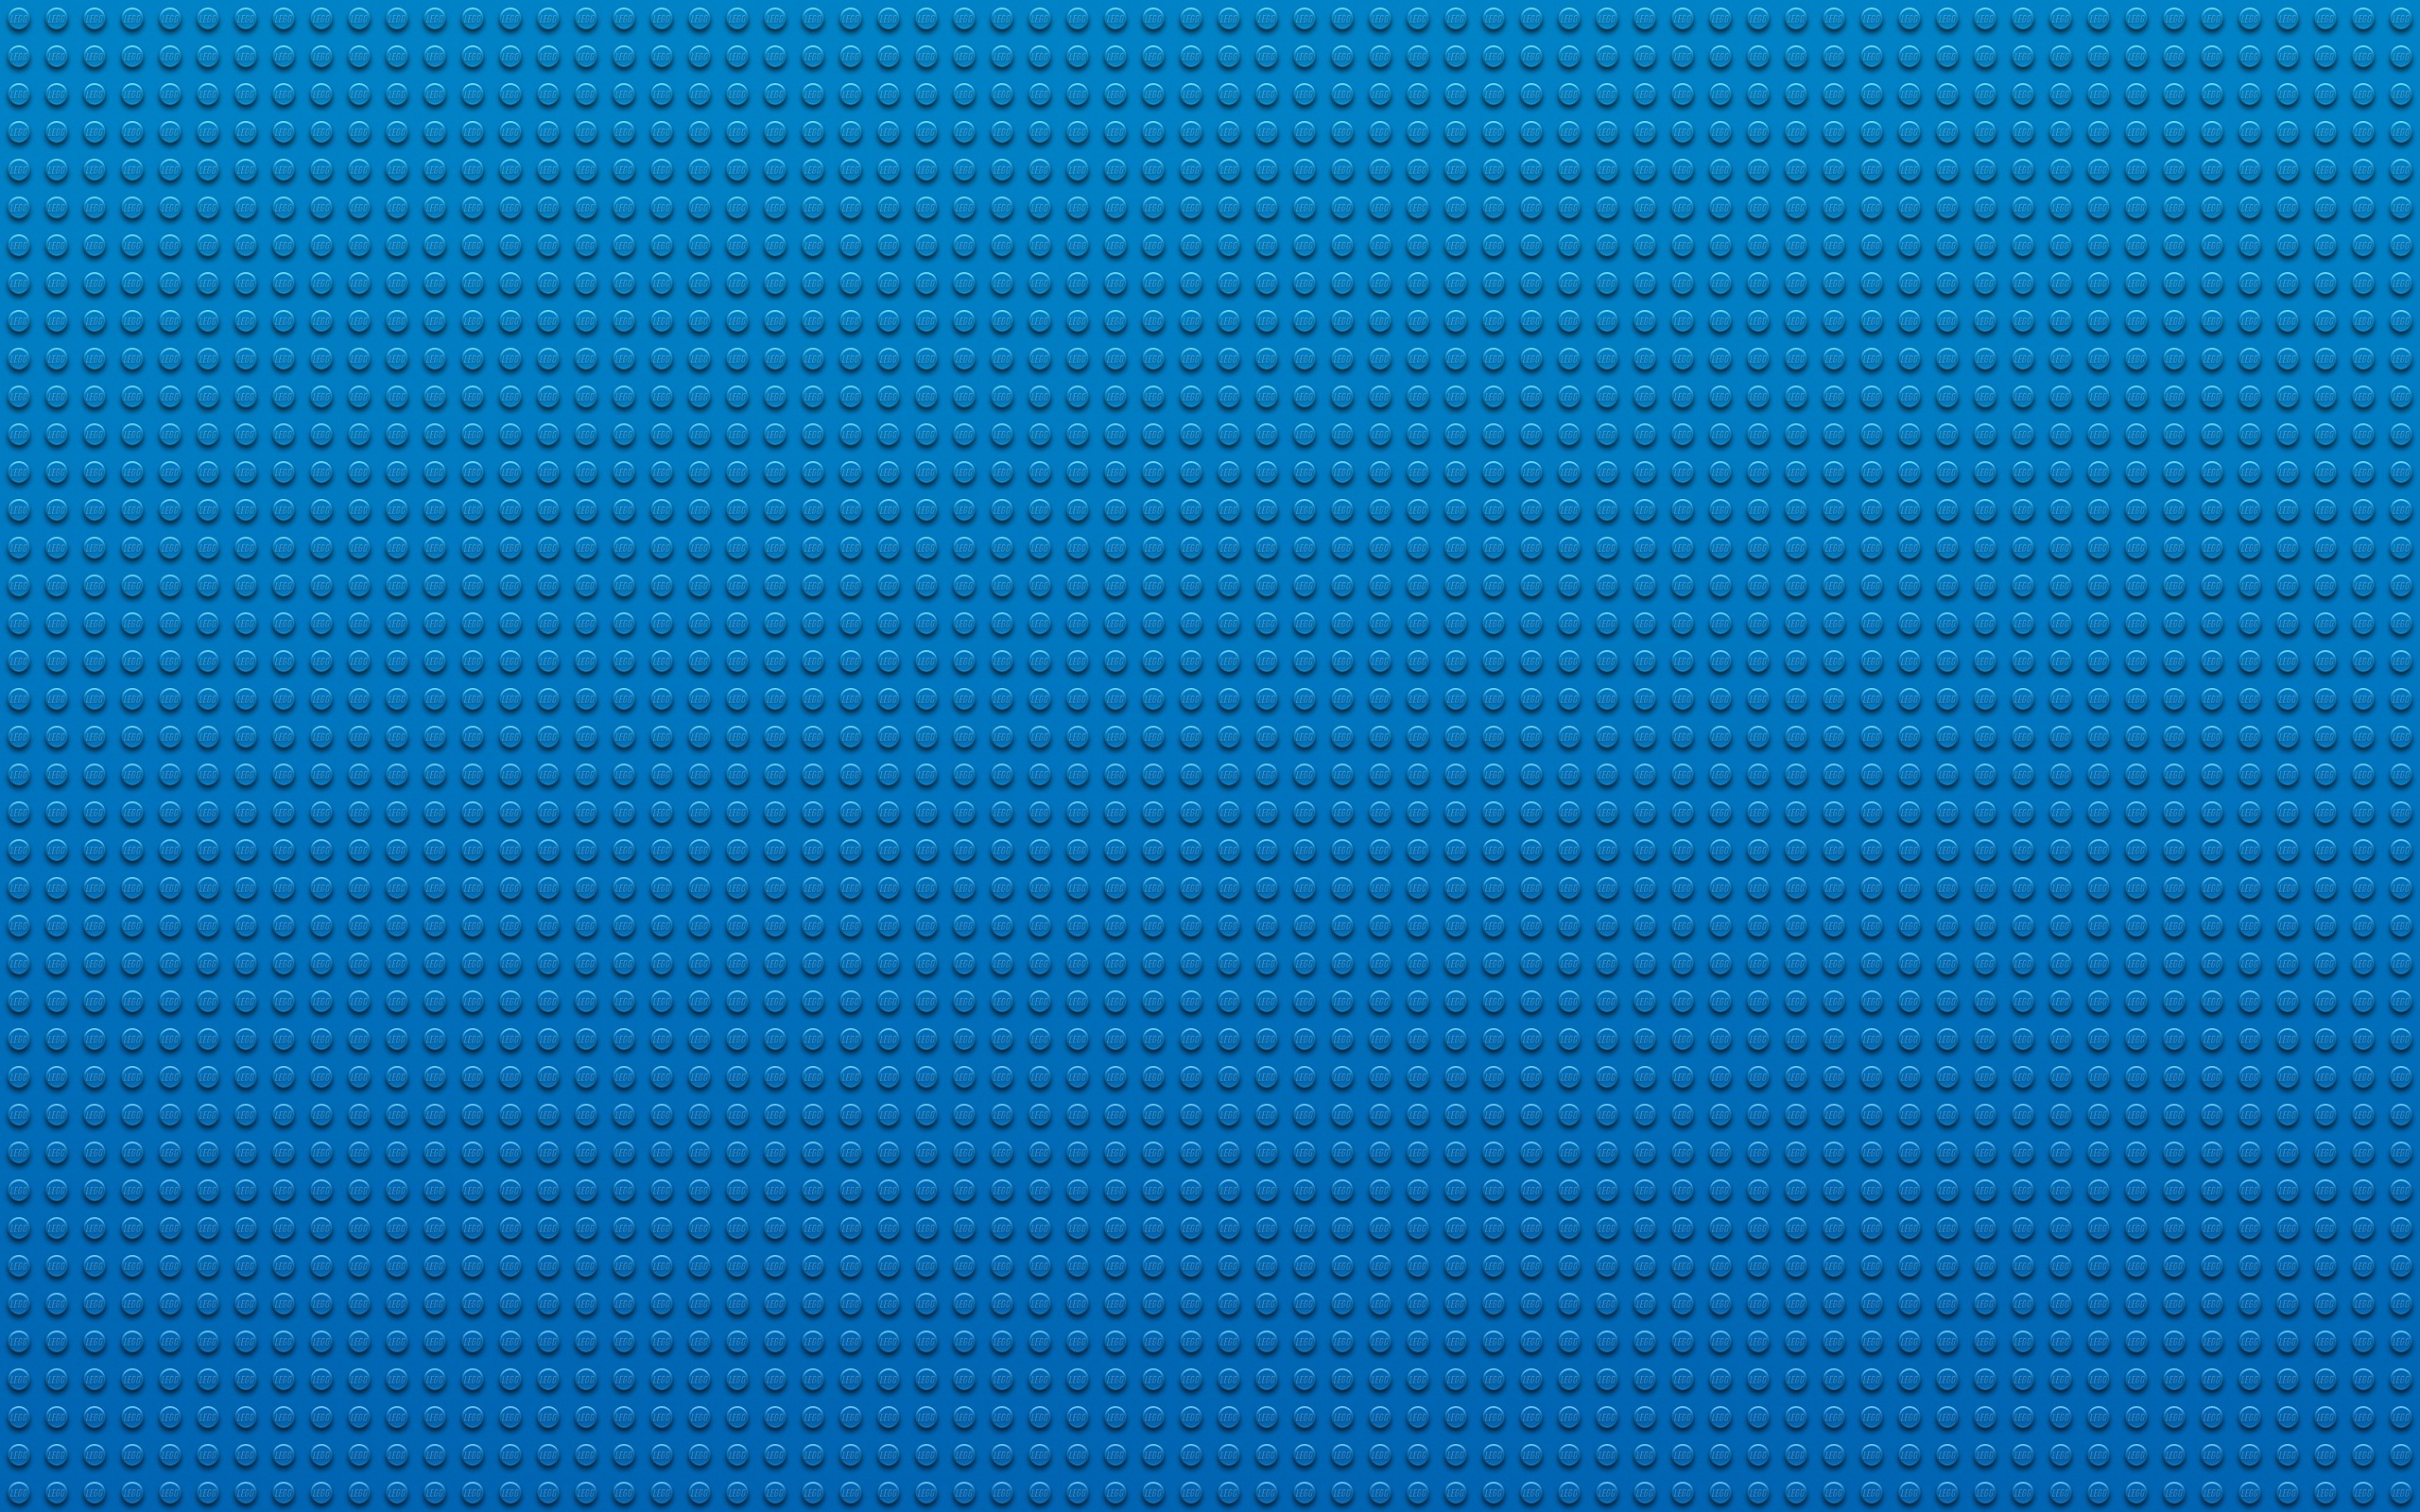 Lego Blue Wallpaper 2560x1600 Lego Blue Textures Dots 2560x1600